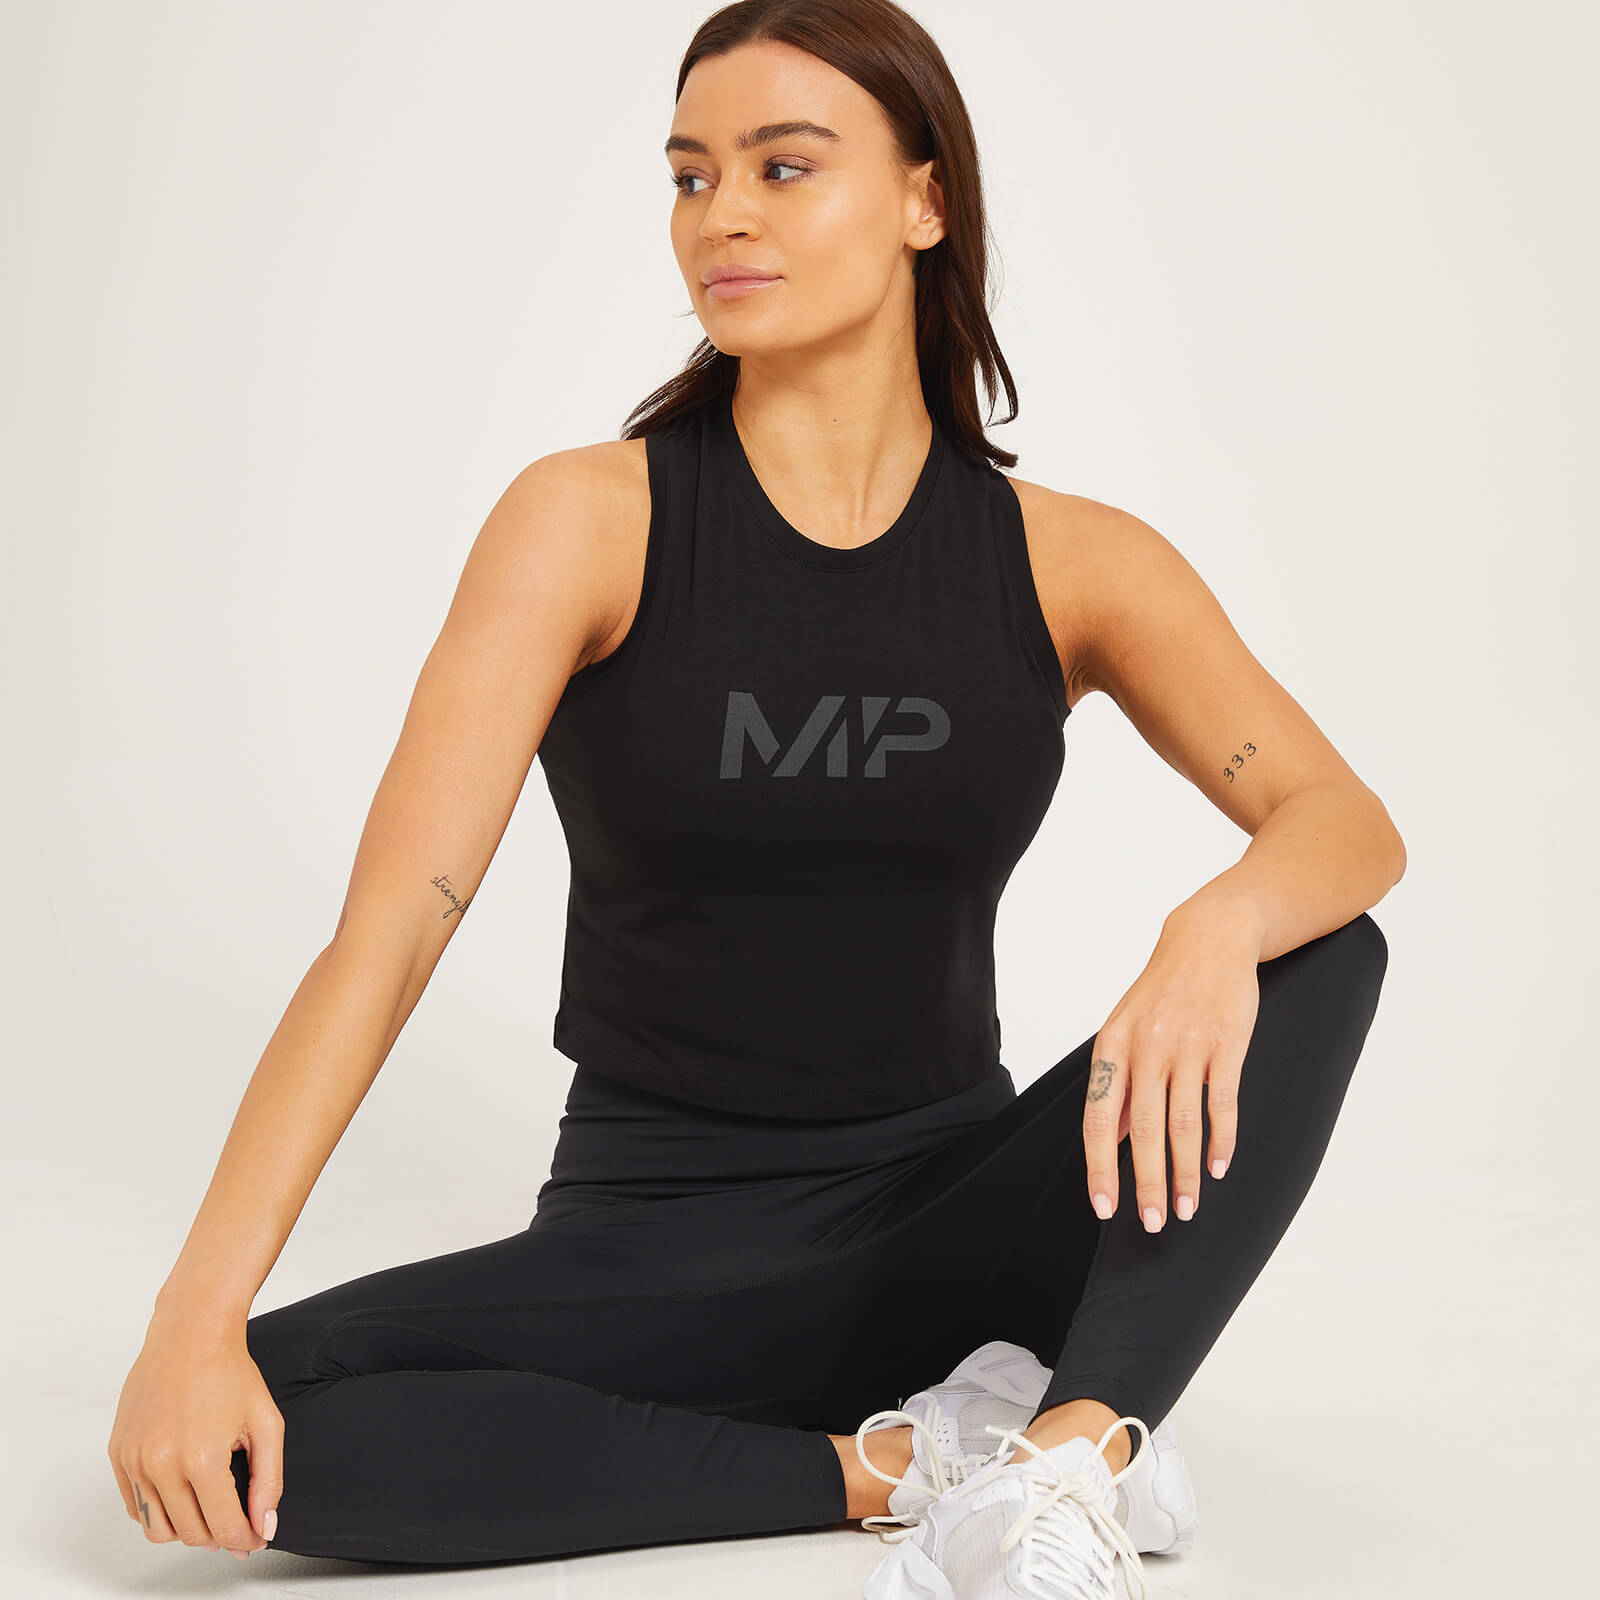 Camiseta corta sin mangas y con espalda nadadora Adapt para mujer de MP - Negro - XL